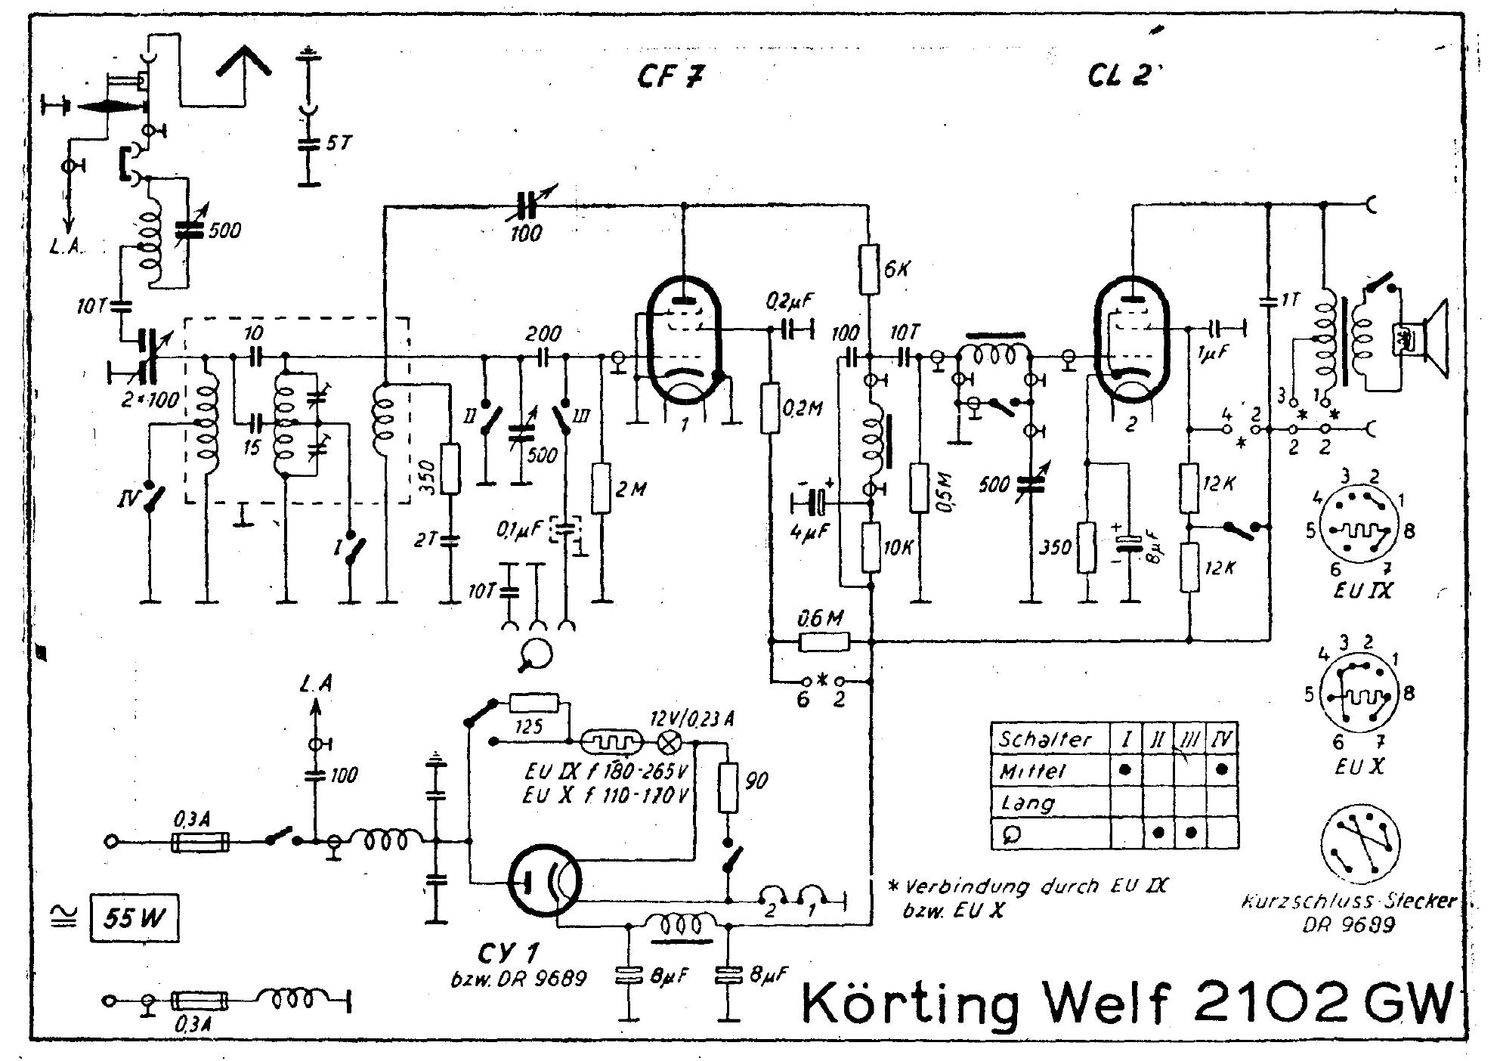 koerting welf 2102 gw schematic